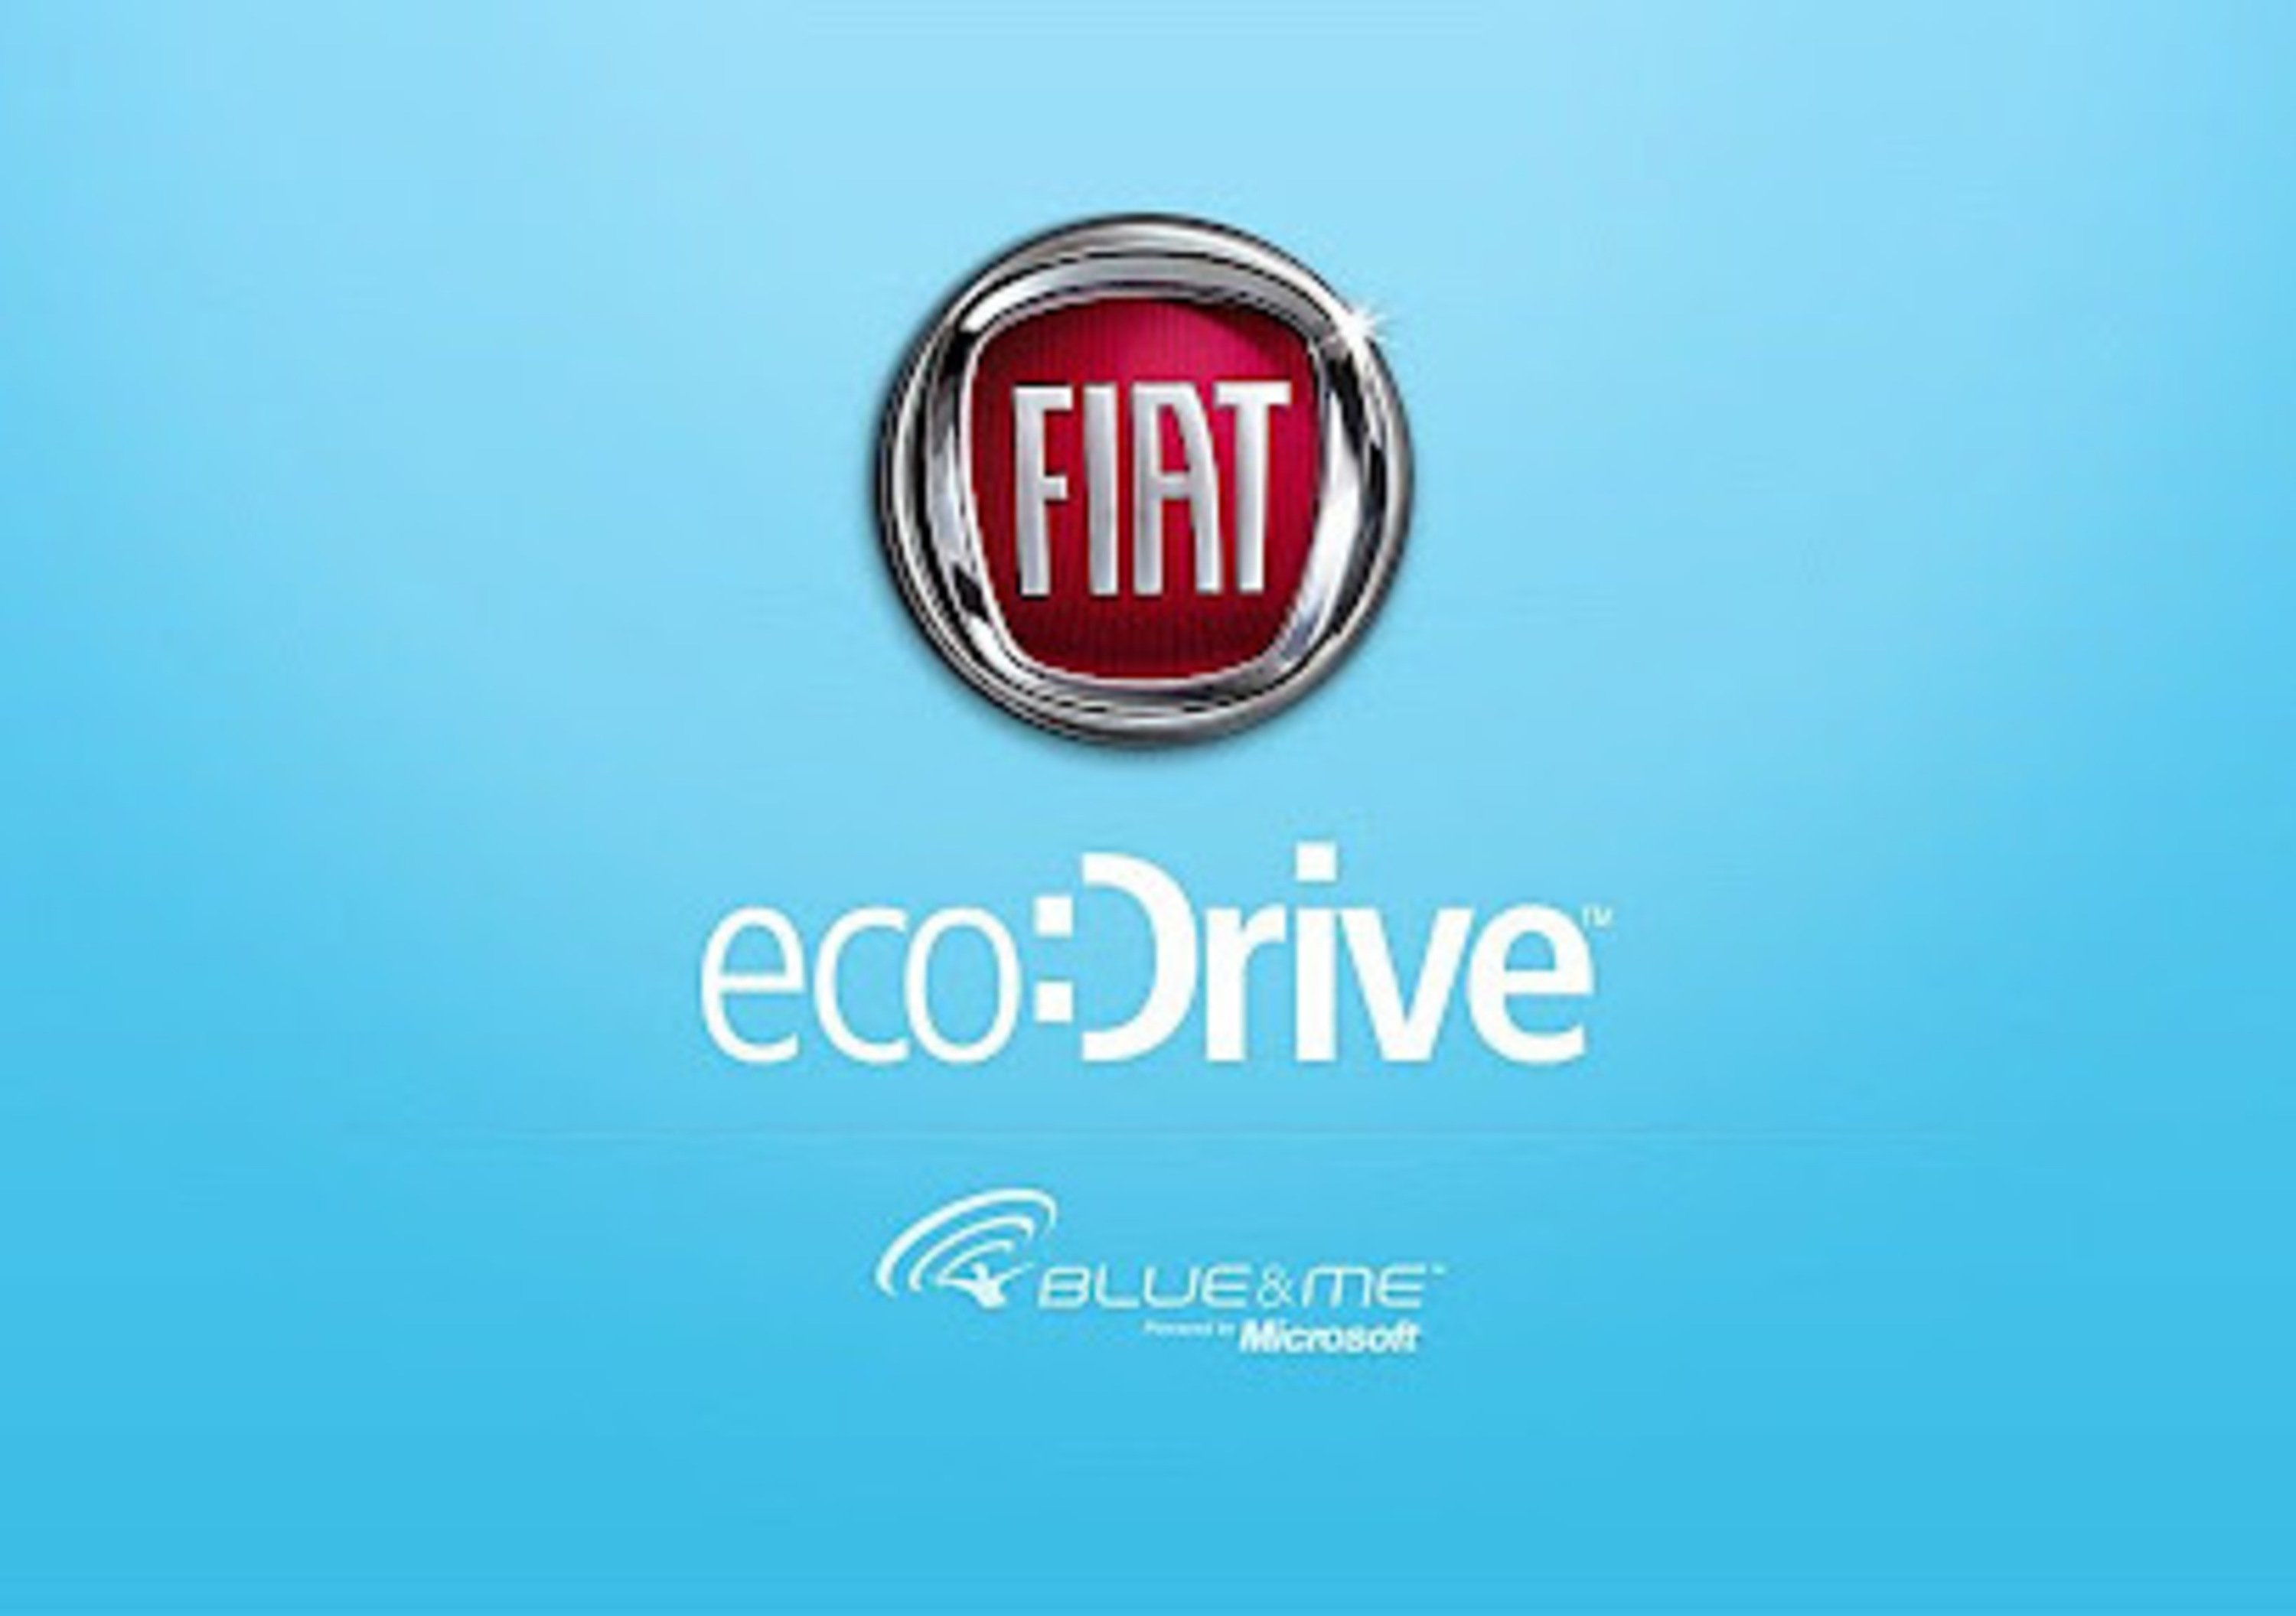 Fiat eco:Drive anche per BlackBerry